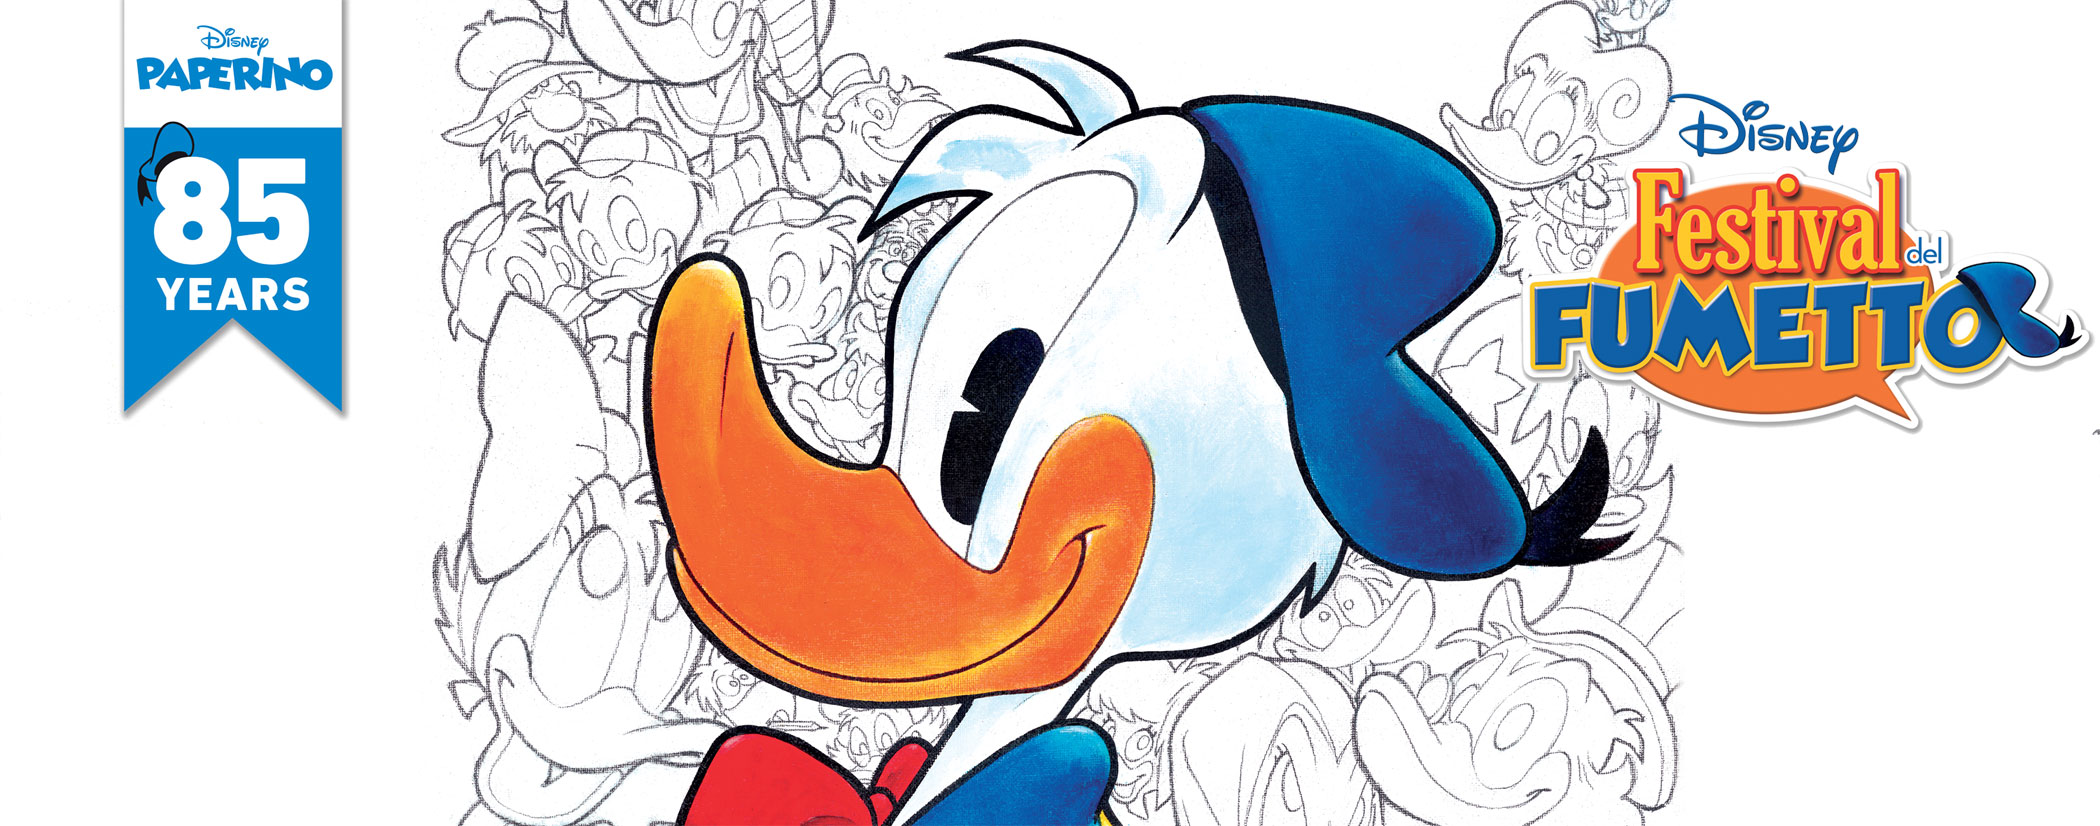 Il Festival del Fumetto Disney celebra l'85esimo anniversario di Donald Duck (Paperino) [credit: Disney]